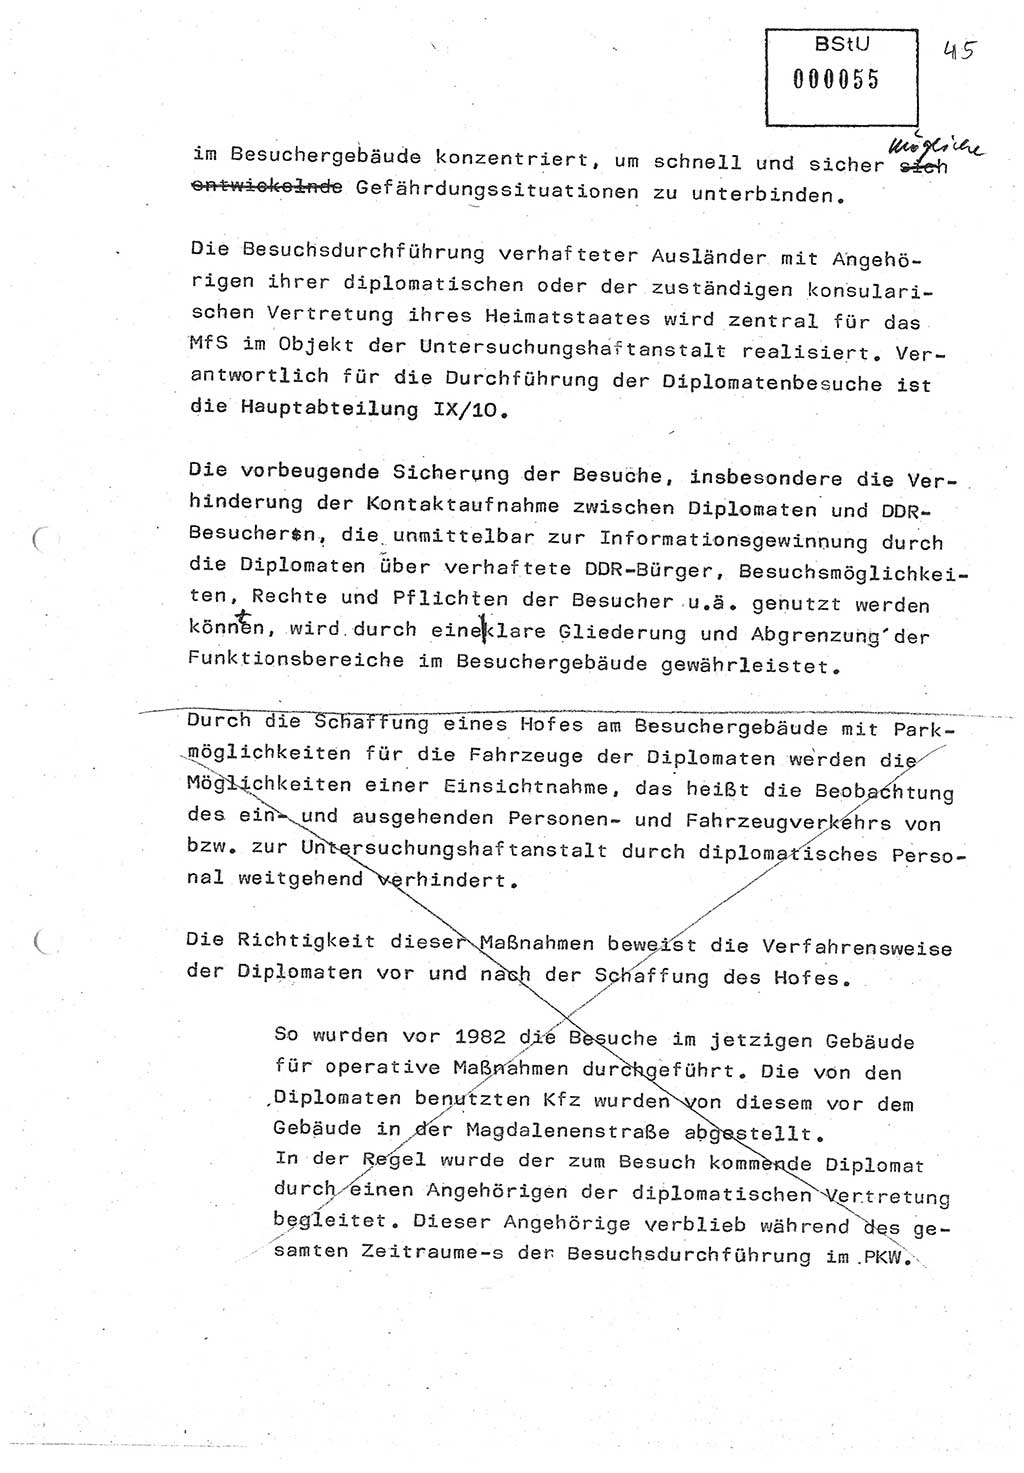 Diplomarbeit (Entwurf) Oberleutnant Peter Parke (Abt. ⅩⅣ), Ministerium für Staatssicherheit (MfS) [Deutsche Demokratische Republik (DDR)], Juristische Hochschule (JHS), Geheime Verschlußsache (GVS) o001-98/86, Potsdam 1986, Seite 55 (Dipl.-Arb. MfS DDR JHS GVS o001-98/86 1986, S. 55)